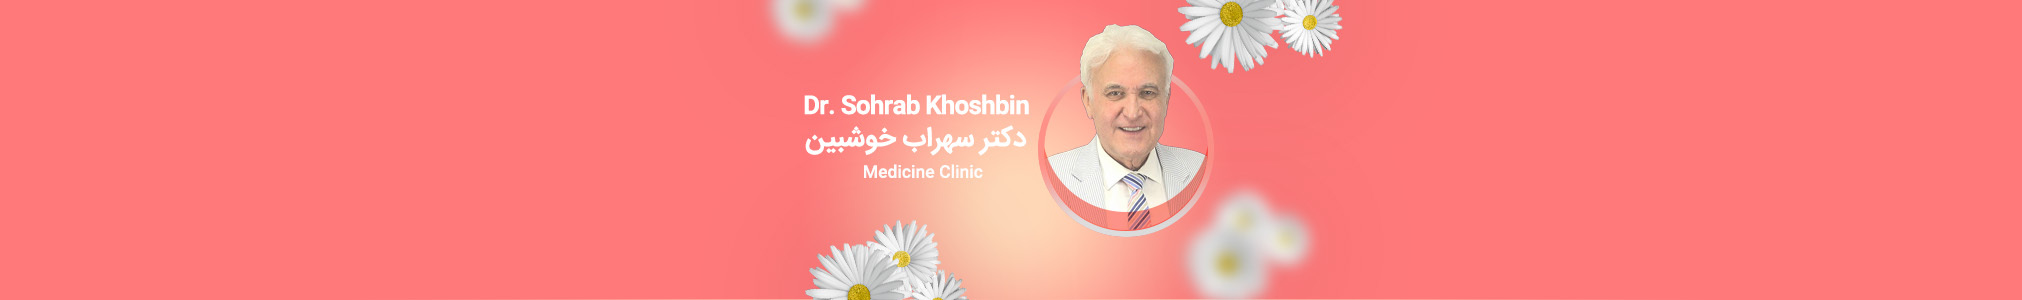 Dr. Sohrab Khoshbin